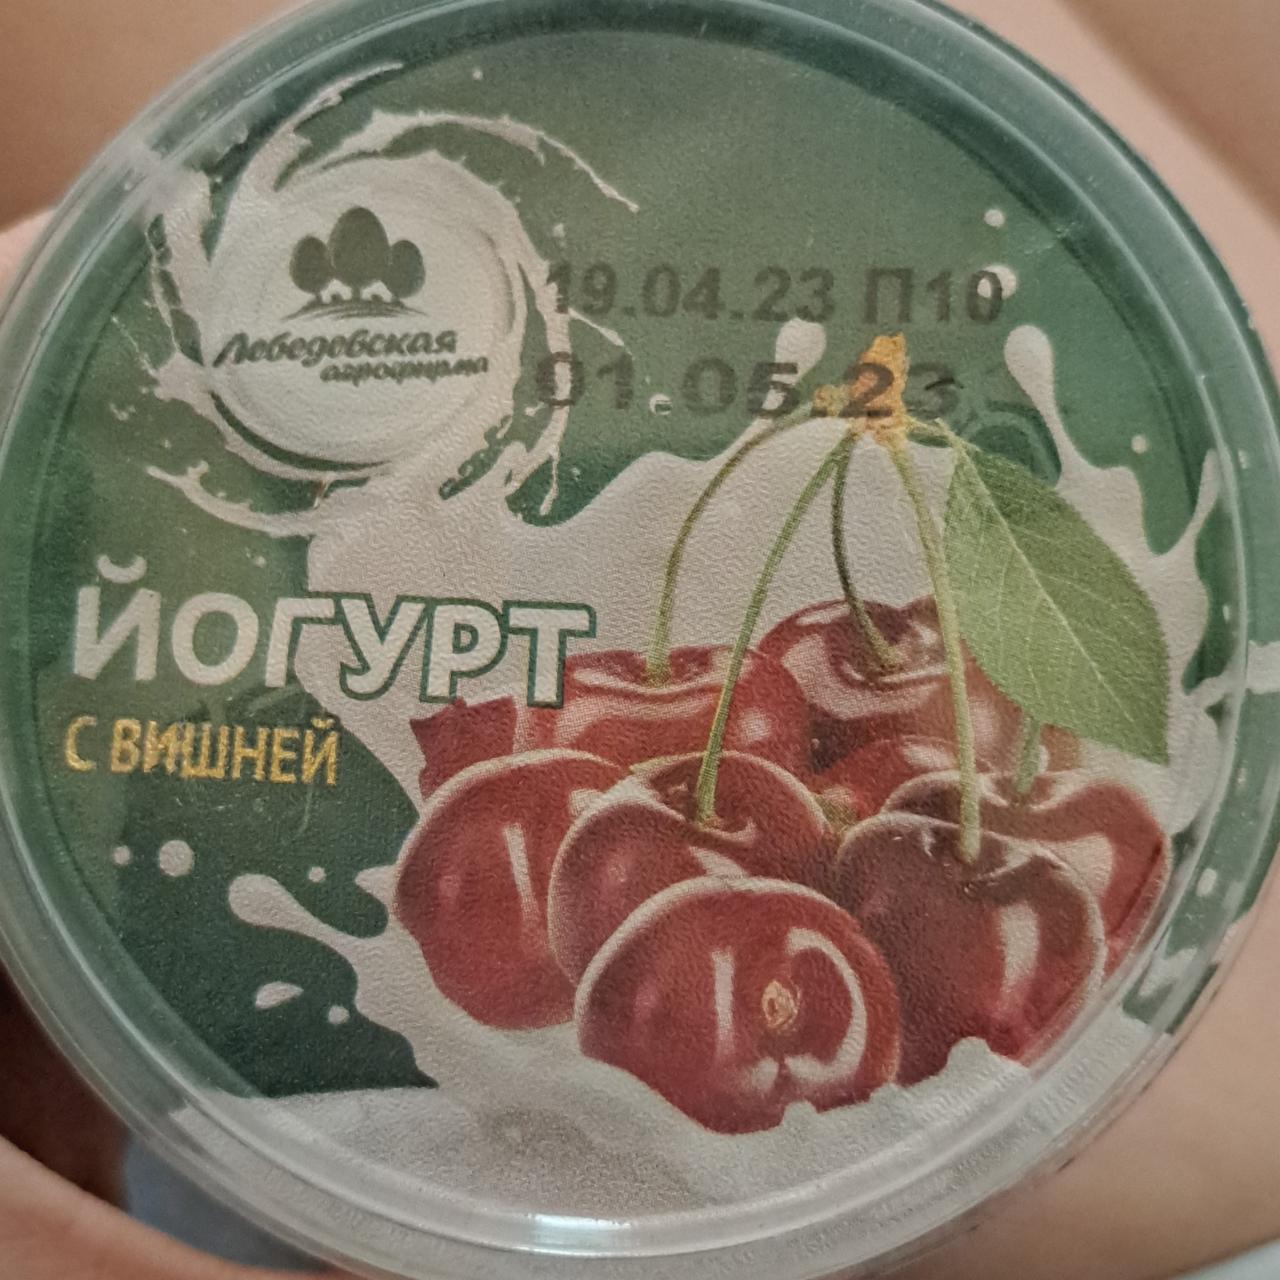 Фото - йогурт с вишней Лебедевская агроферма